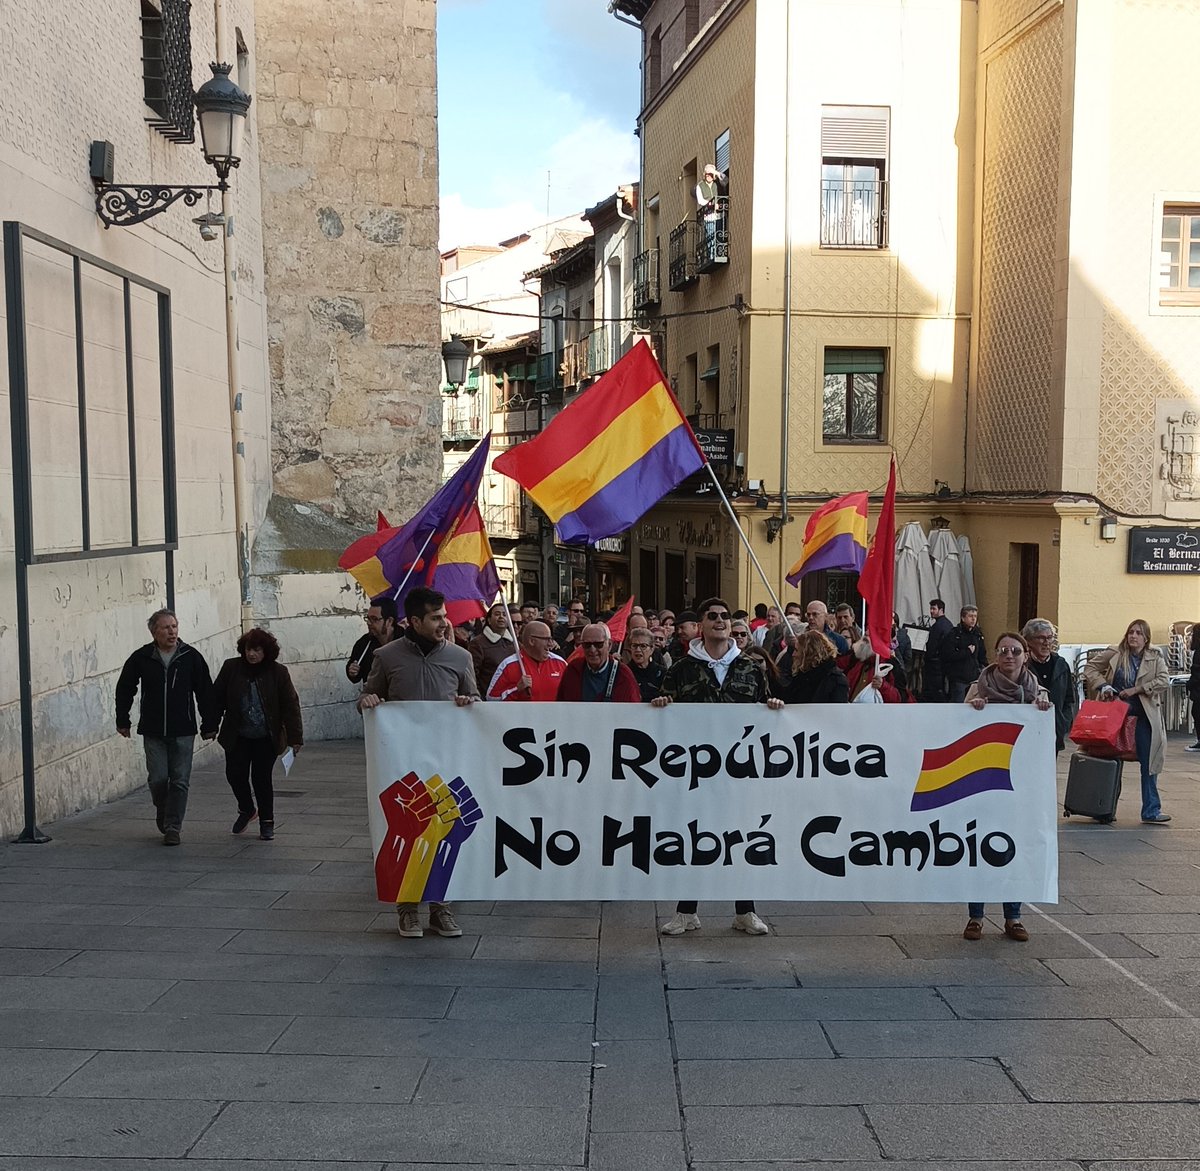 📷 Algunas imágenes del #14deAbril hoy, en Segovia.